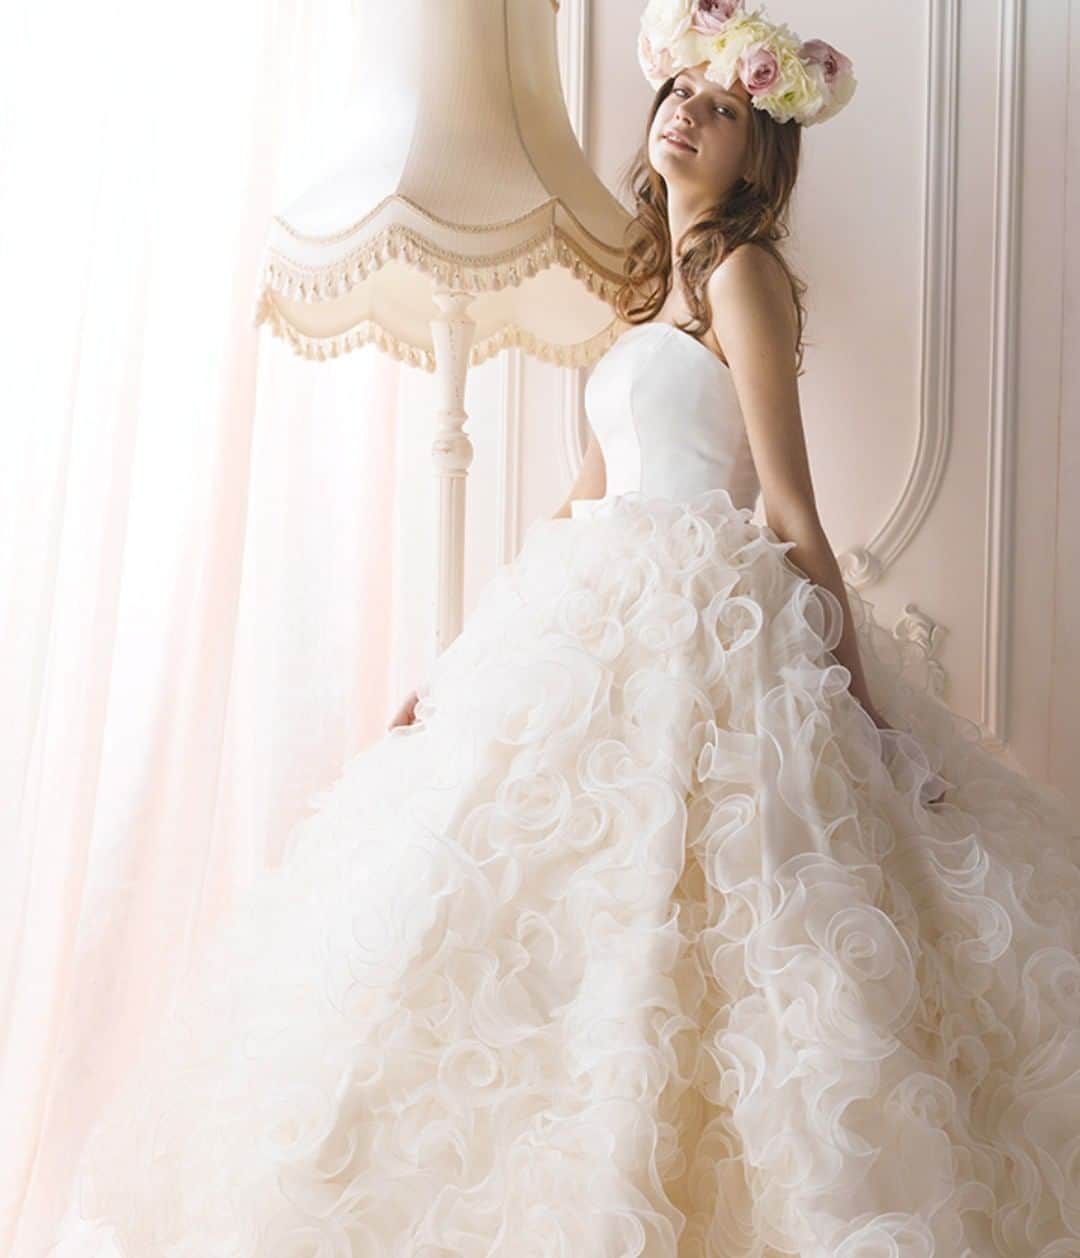 プリンセスブライダルフェアのインスタグラム：「. ┈┈┈┈┈┈┈┈┈┈┈┈┈┈┈┈┈┈┈┈┈┈┈┈ 👸『#プリンセスブライダル』『#憧れのプリンセス』の ハッシュタグをつけて写真をUPして、 あたなの理想の結婚式を教えてください♪ フェア参加で豪華グッズプレゼント🎁💛 ┈┈┈┈┈┈┈┈┈┈┈┈┈┈┈┈┈┈┈┈┈┈┈┈ 頭に大きな花の冠。バラのようなウエディングドレス💐 . . #プリンセスウェディングフェア#ディズニープリンセス#プリンセス#プリンセスライン#エスクリ#ウエディングドレス#花嫁#式場見学#記念日#挙式 #結婚式#ドレス試着#beautifuldress#ブライダルエステ#ブライダルヘア#ウェディング#ナチュラルウェディング#結婚準備#ウェディングヘア#人気#結婚サポート#ベル#ブライダルフェア#ディズニー好き#ウェディングドレス選び#記念日#ウェディング準備#2018夏婚」